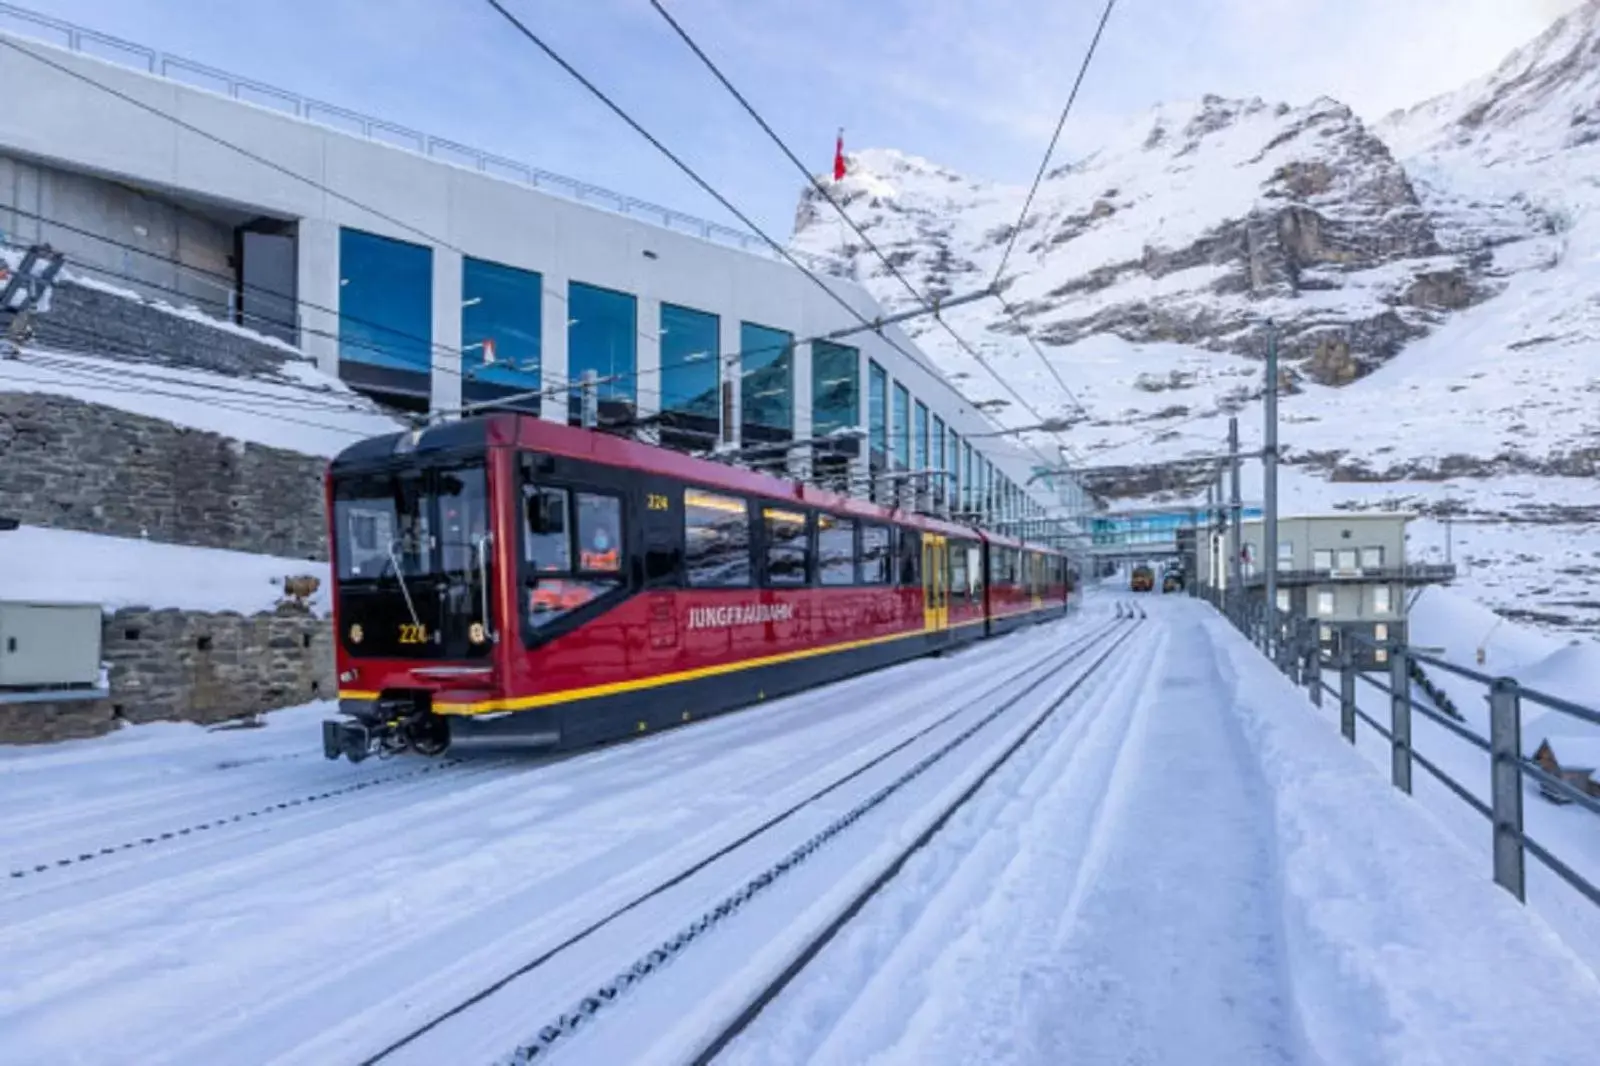 Skiing, Winter in Chalet-Gafri - BnB - Frühstückspension - Service wie im Hotel